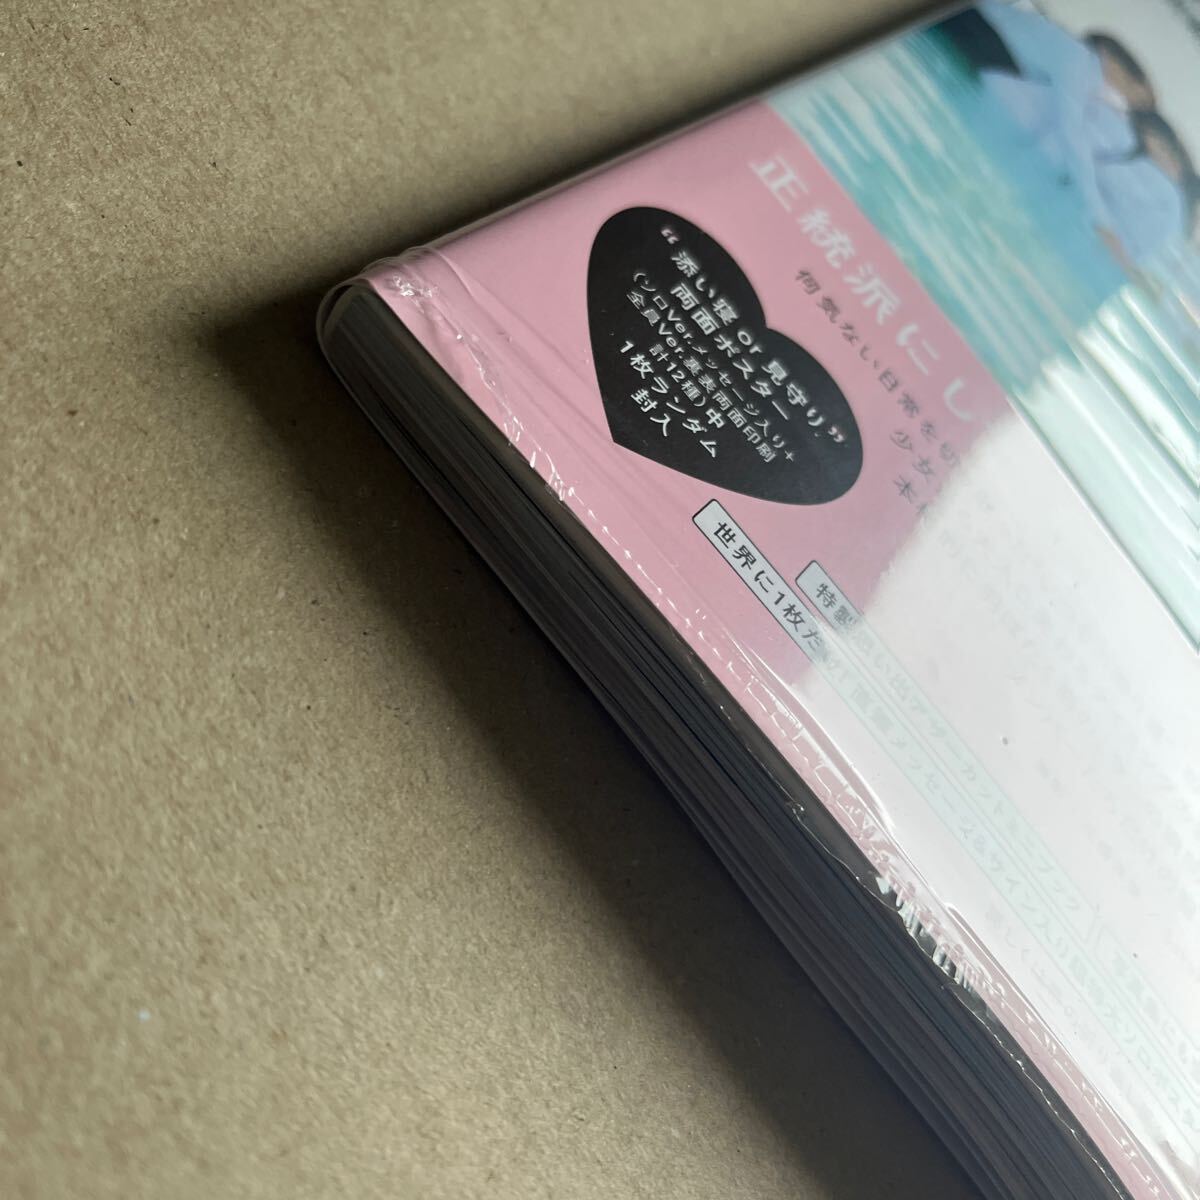 乃木坂46 5期生 写真集「あの頃、乃木坂にいた」 通常盤 封入ポスター、応募券なし 未読品_画像3